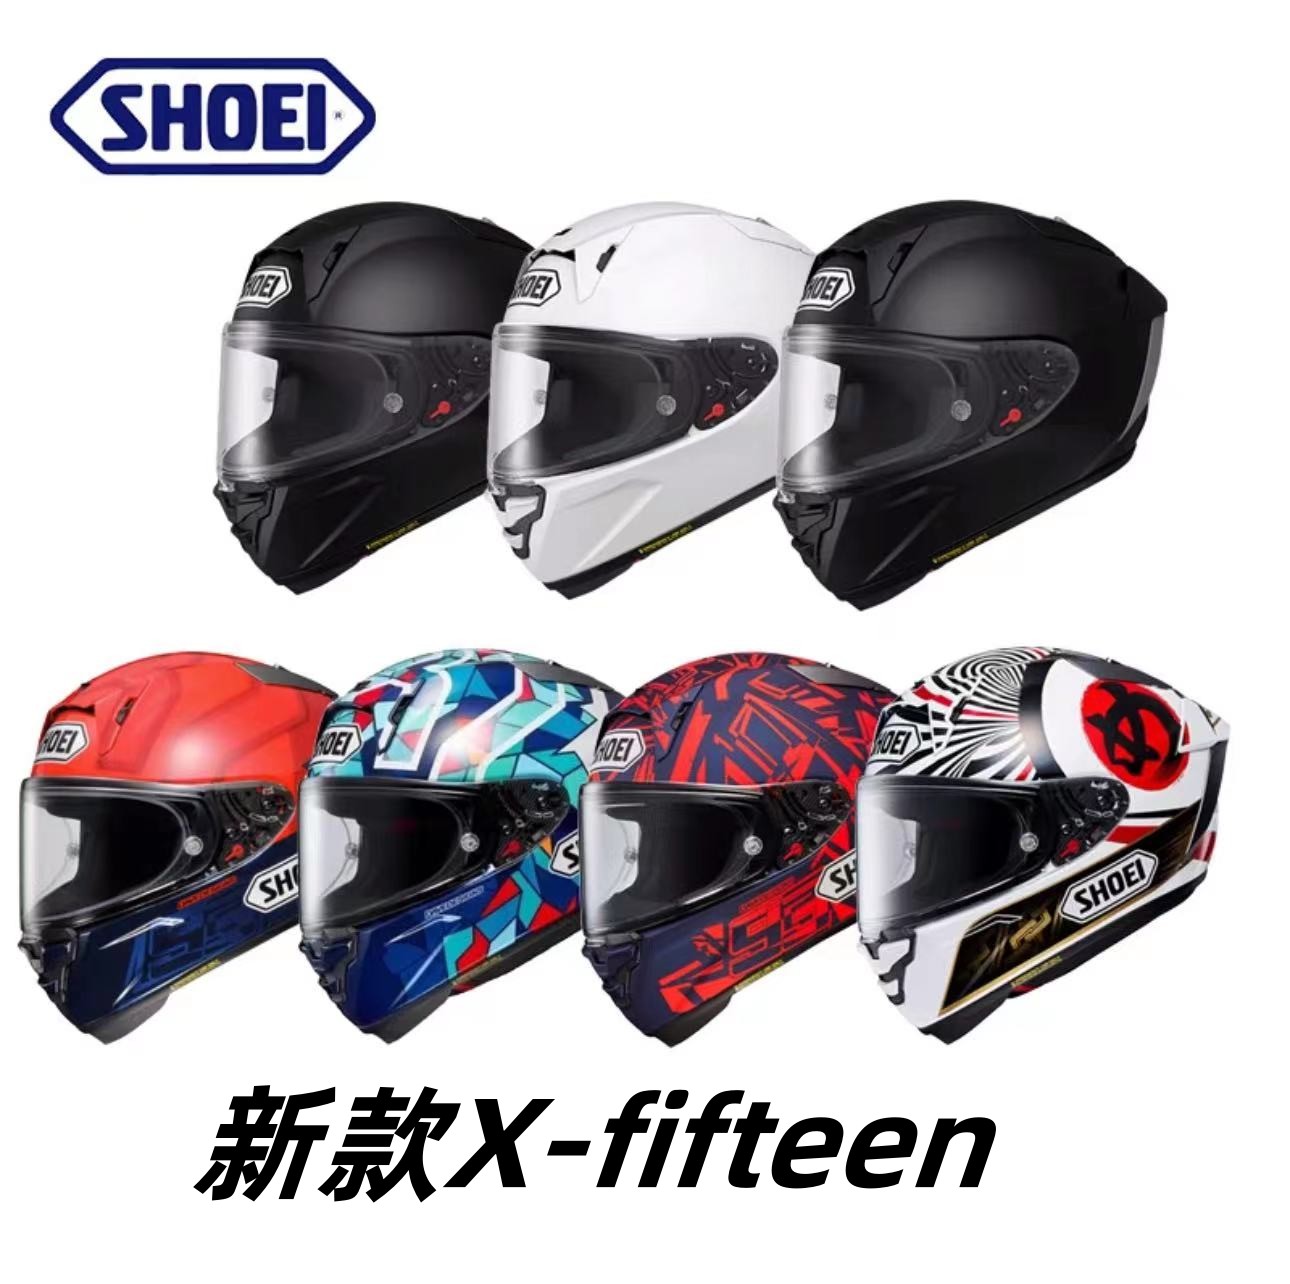 顺丰空运日本进口SHOEI摩托车头盔X15机车赛道全盔招财猫5年保修